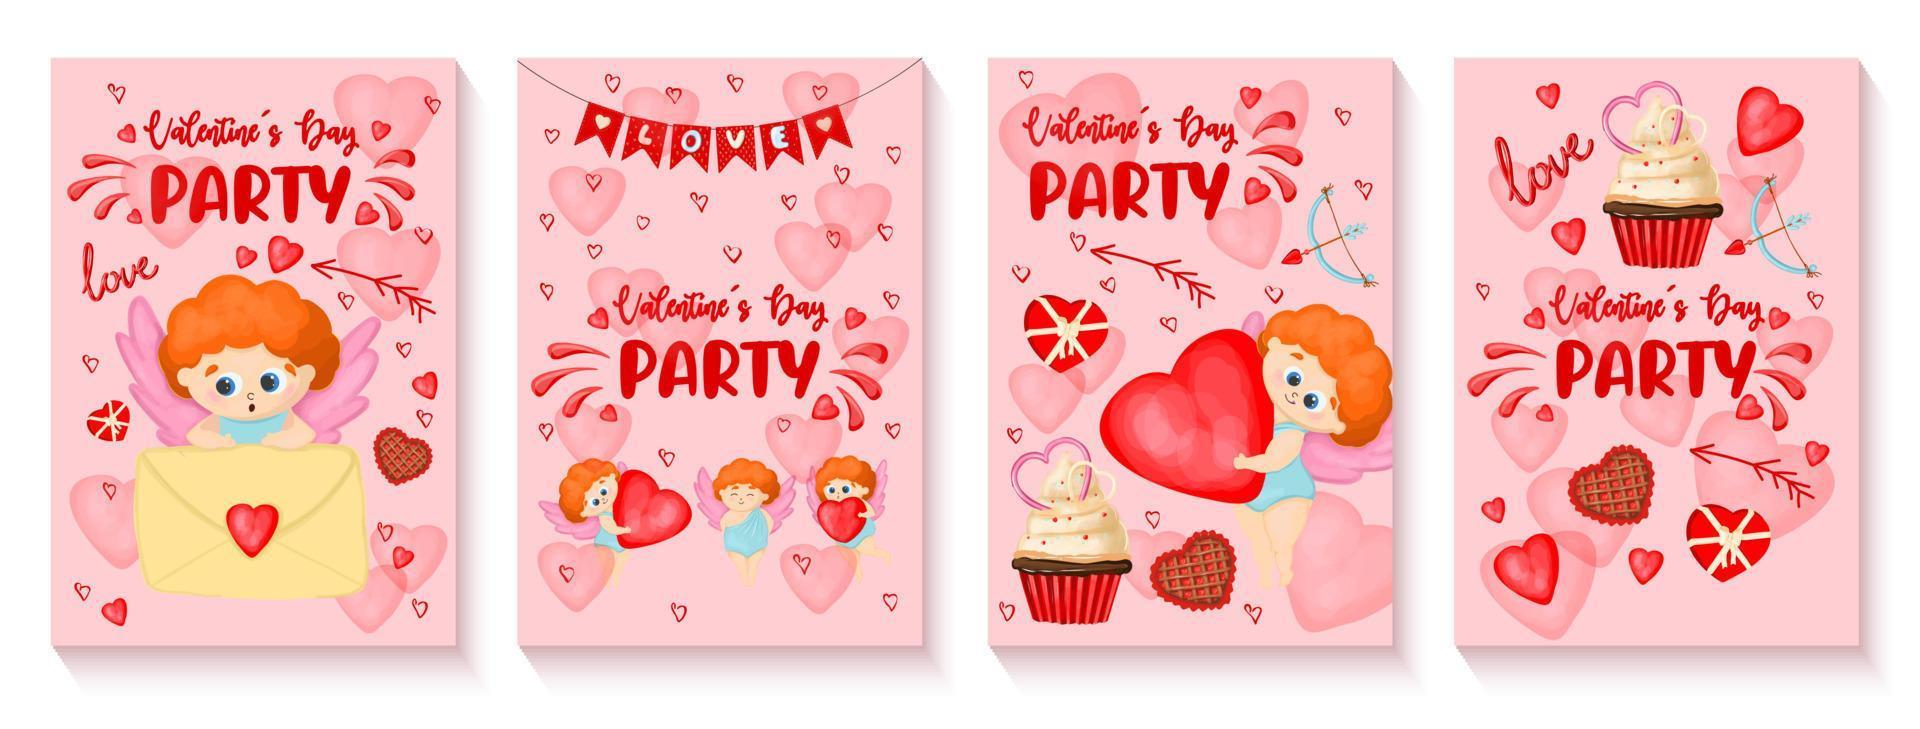 eine reihe von einladungsplakaten für die valentinstagsparty am 14. februar. süßer Amor lädt zu einer romantischen Party ein. Hochformat. vektor